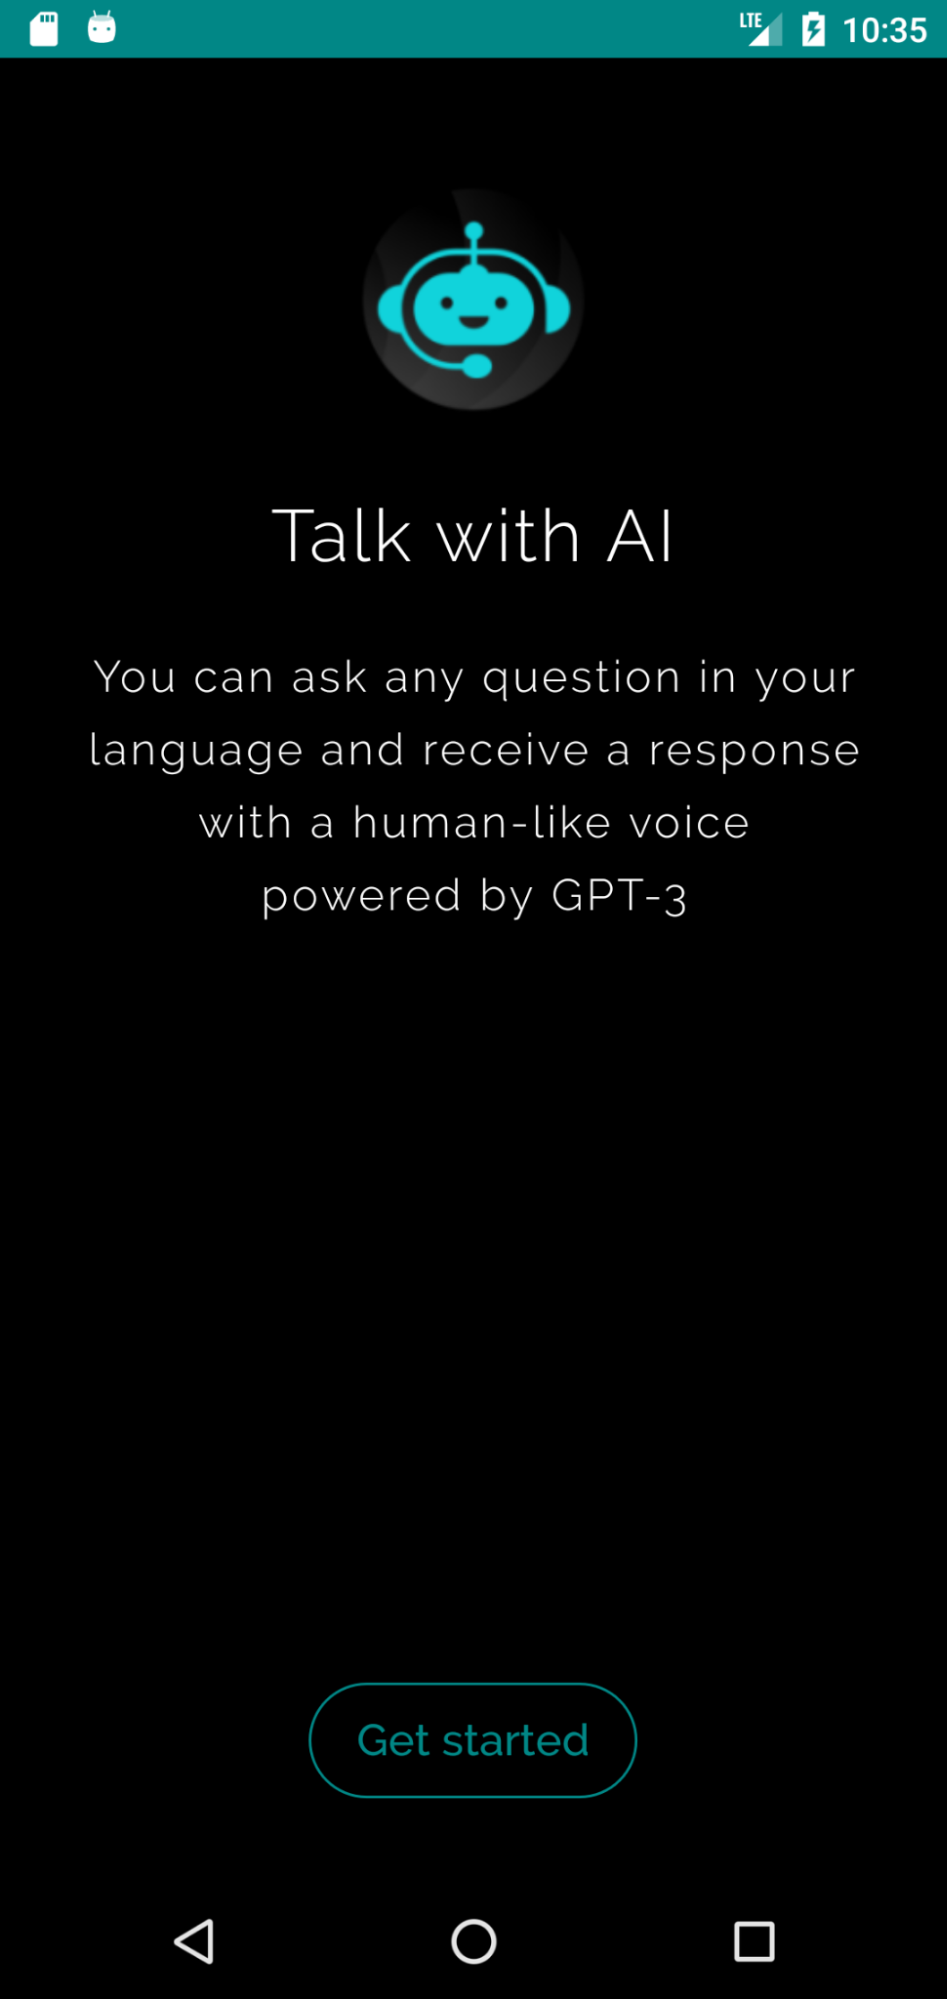 画像2はSuperGPTアプリのスクリーンショットです。SuperGPTのロゴが上部に表示されており、その下には「Talk with AI(AIと話そう)」というヘッダーがあります。その下には「You can ask any question in your language and receive a response with a human-like voice powered by GPT-3. (お使いの言語でどんな質問でもでき、GPT-3が人間のような声で返事をしてくれます。)」というテキストが表示されています。下部には「Get started (はじめる)」と書かれたボタンがあります。